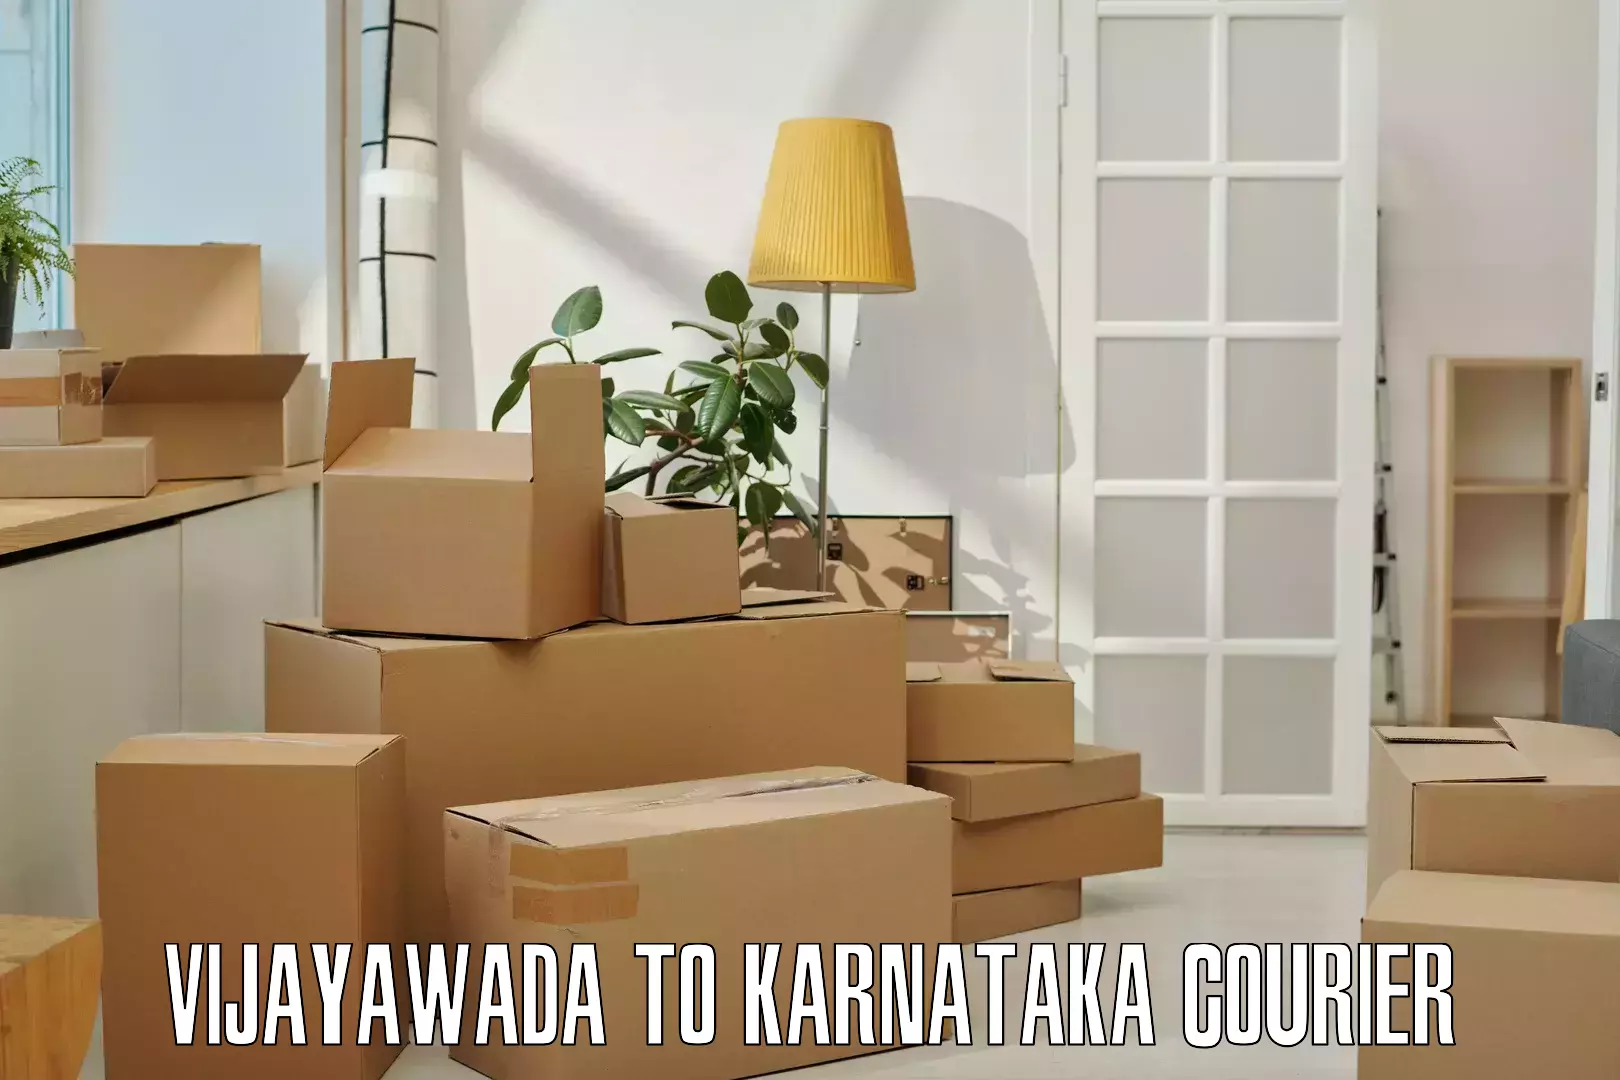 Logistics service provider Vijayawada to Karnataka